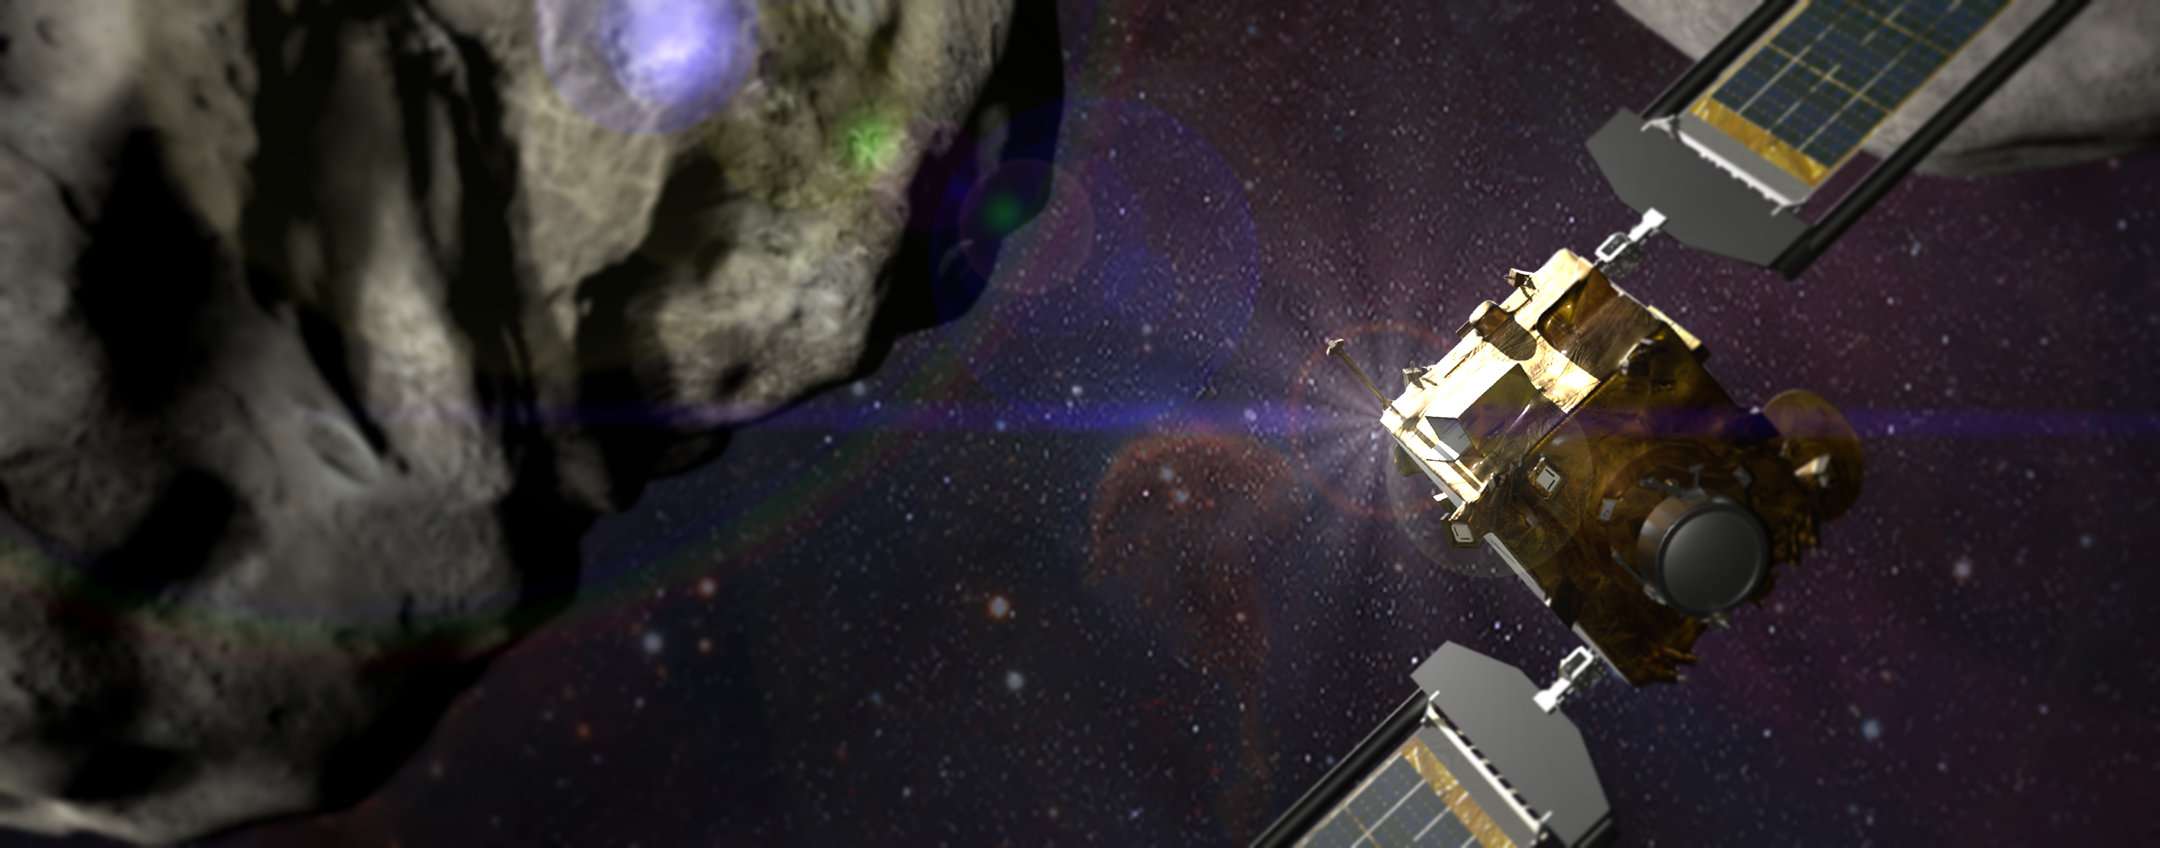 Dart Mission: in partenza verso l’asteroide (immagini LIVE)